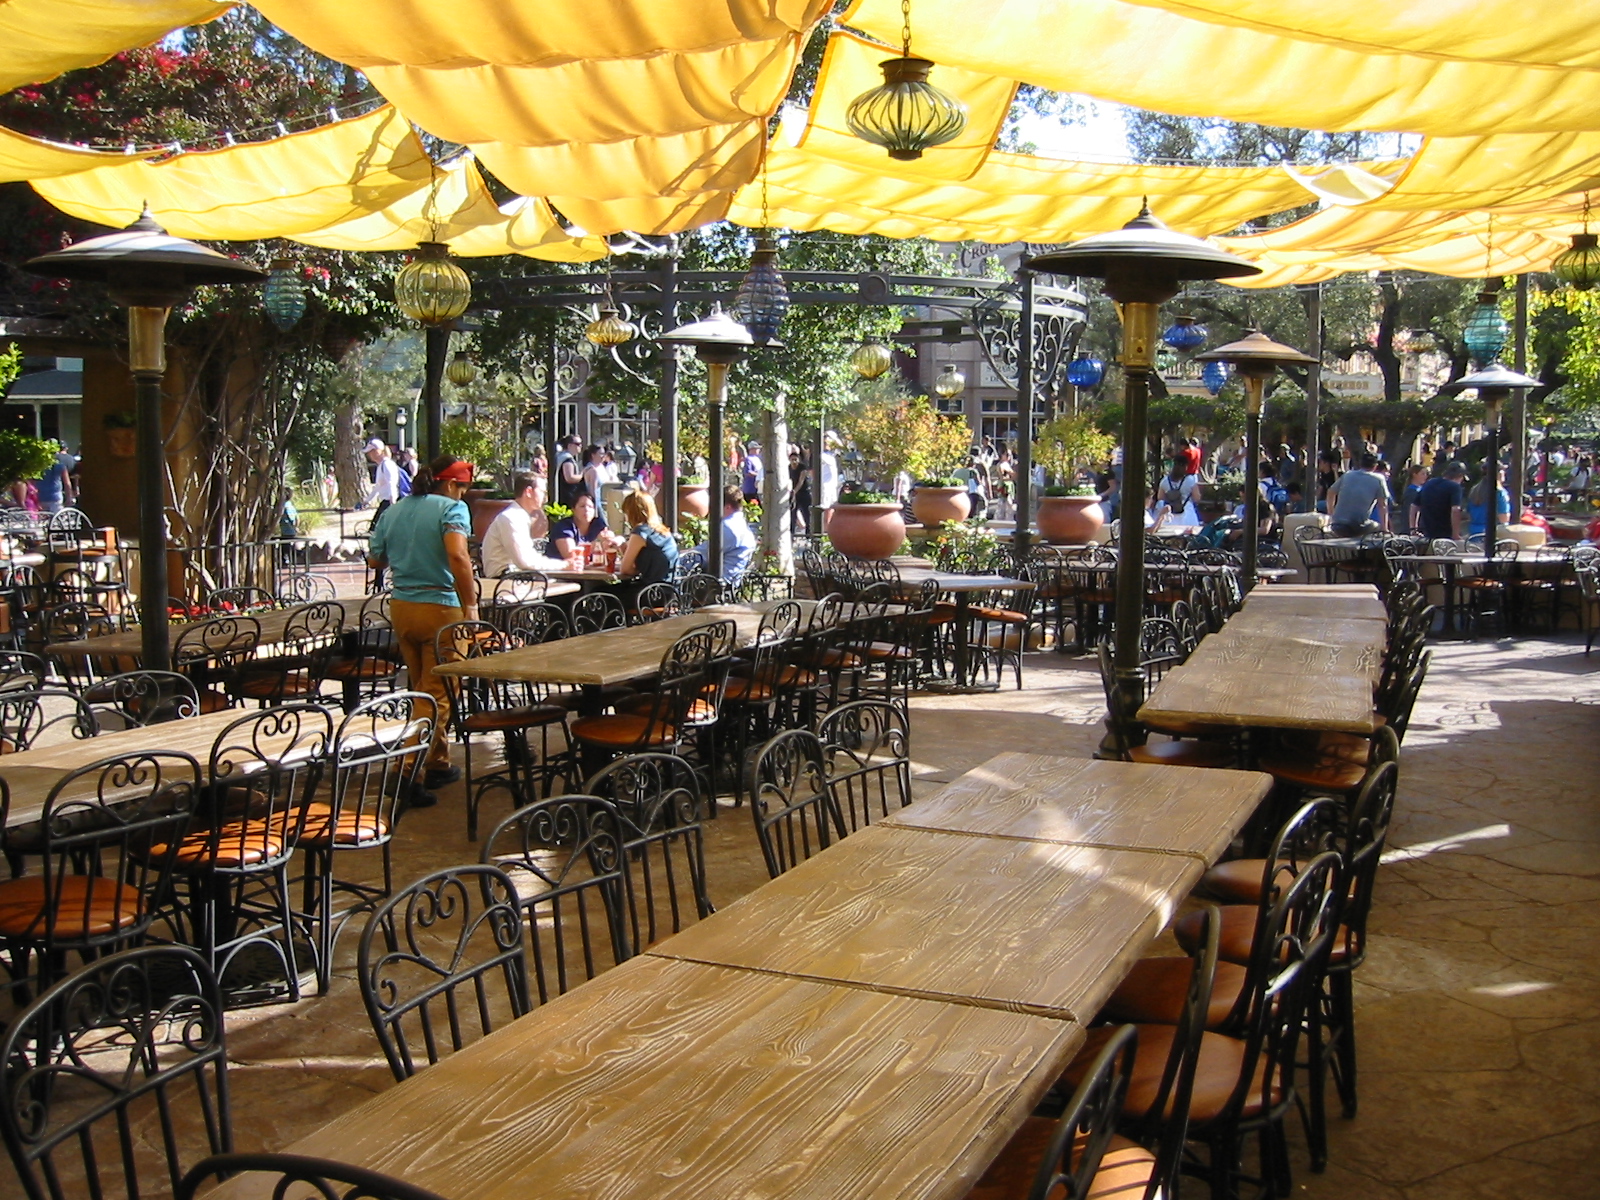 Rancho del Zocalo - Outdoor Eating Area